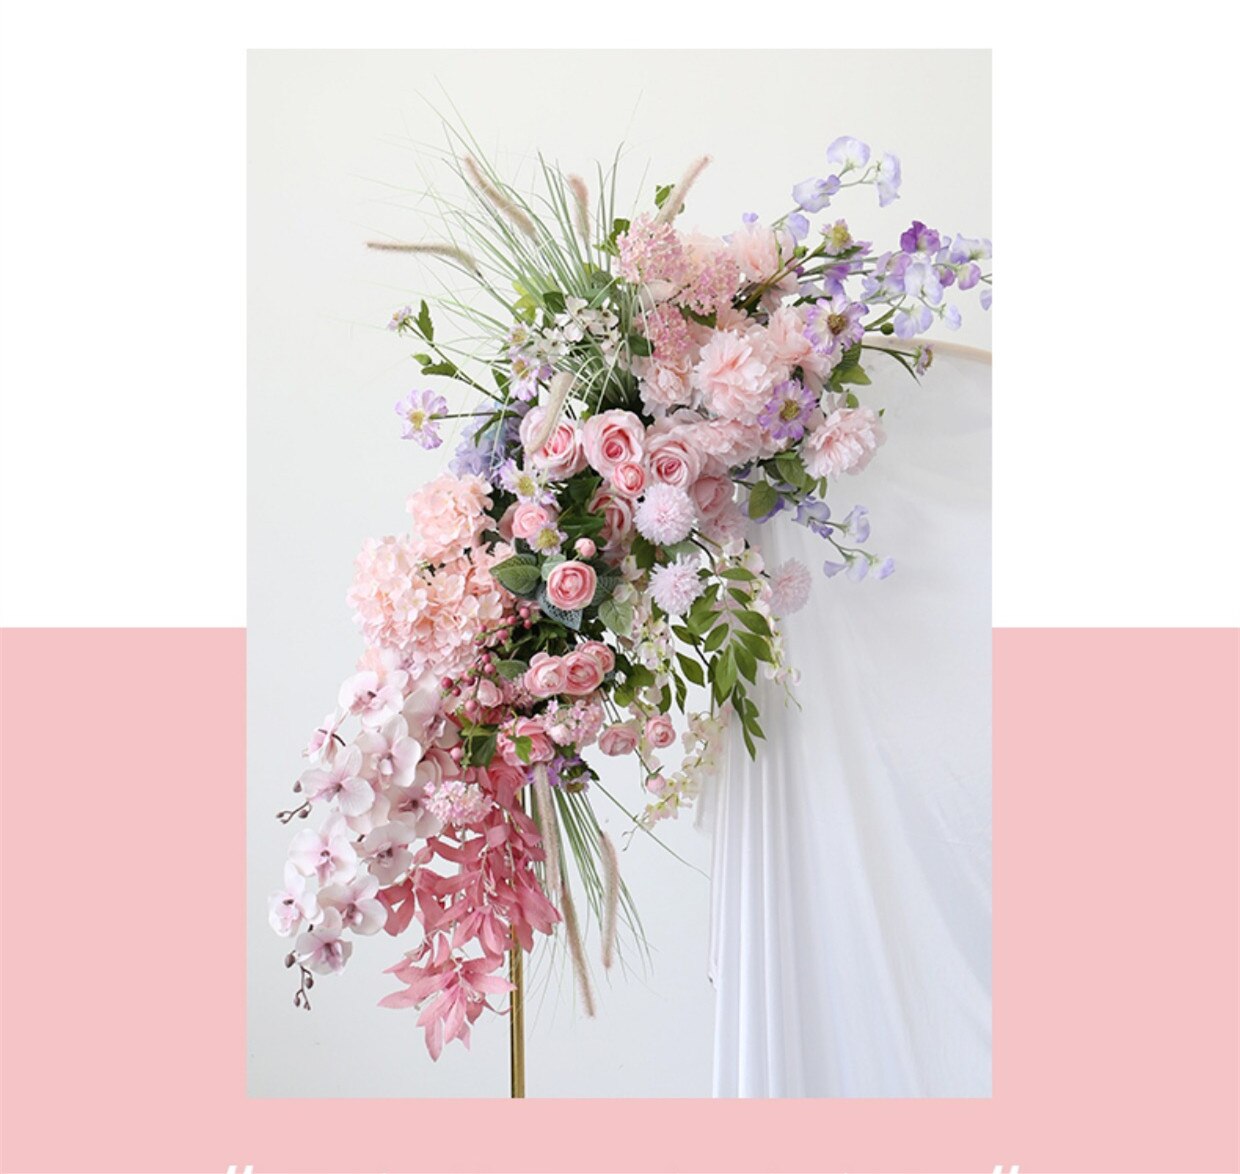 buy wedding flower arrangements4